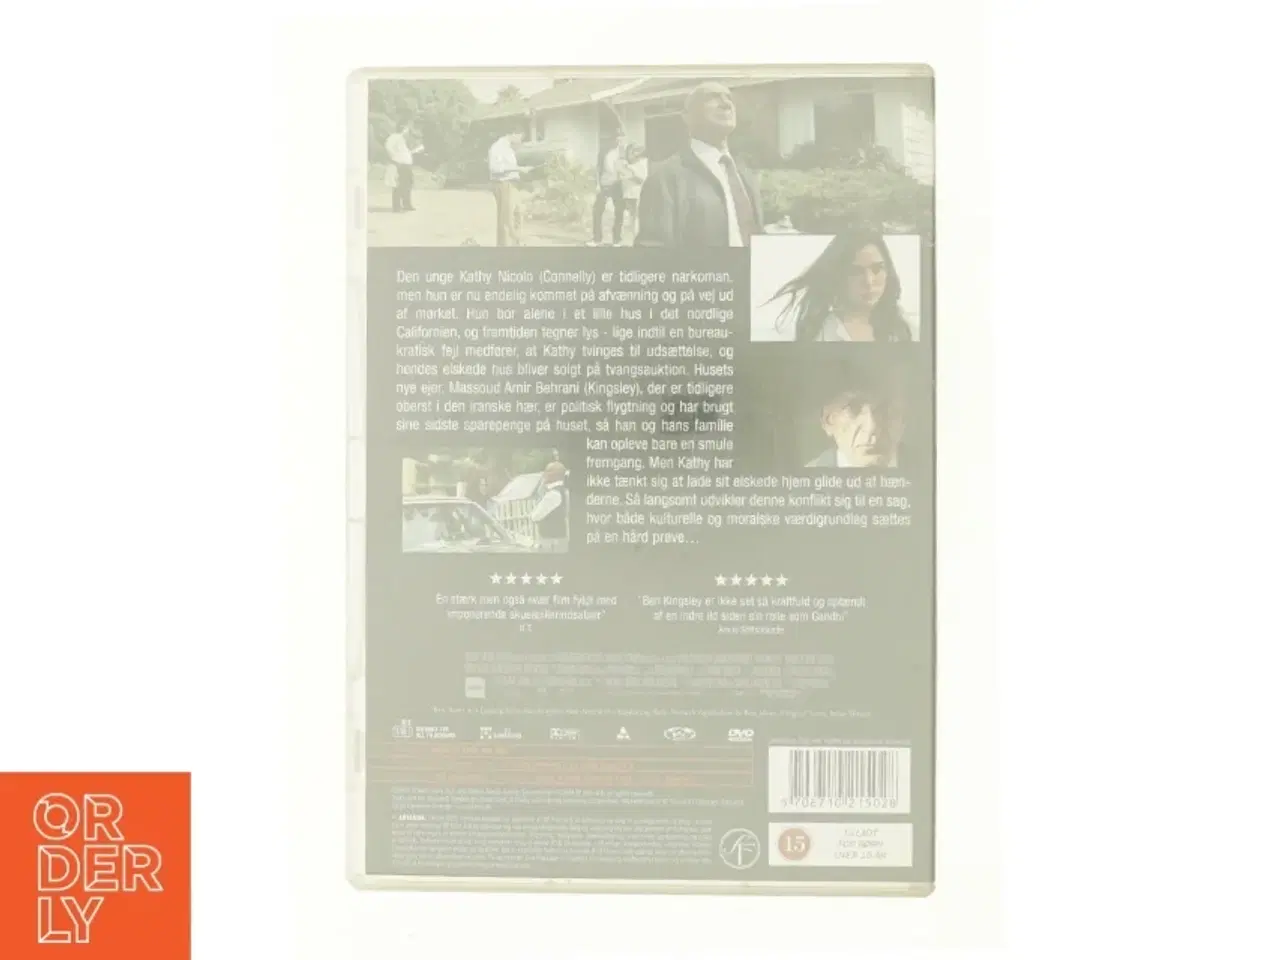 Billede 2 - House of Sand and Fog fra DVD